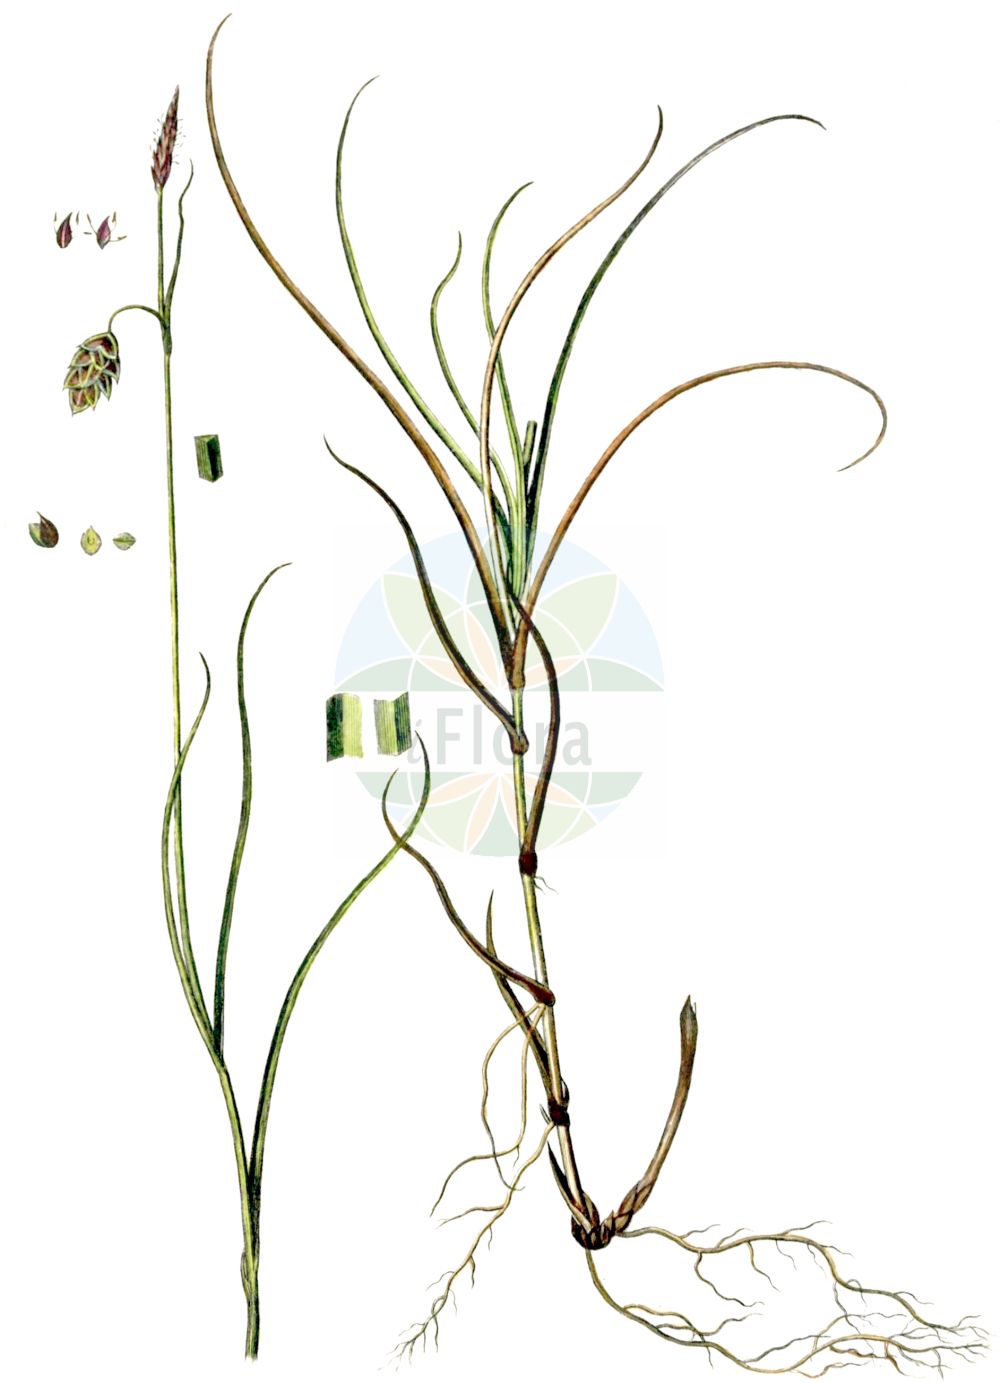 Historische Abbildung von Carex limosa (Schlamm-Segge - Bog-Sedge). Das Bild zeigt Blatt, Bluete, Frucht und Same. ---- Historical Drawing of Carex limosa (Schlamm-Segge - Bog-Sedge). The image is showing leaf, flower, fruit and seed.(Carex limosa,Schlamm-Segge,Bog-Sedge,Carex limosa,Schlamm-Segge,Bog-Sedge,Mud Sedge,Carex,Segge,Sedge,Cyperaceae,Sauergräser,Sedge family,Blatt,Bluete,Frucht,Same,leaf,flower,fruit,seed,Oeder (1761-1883))